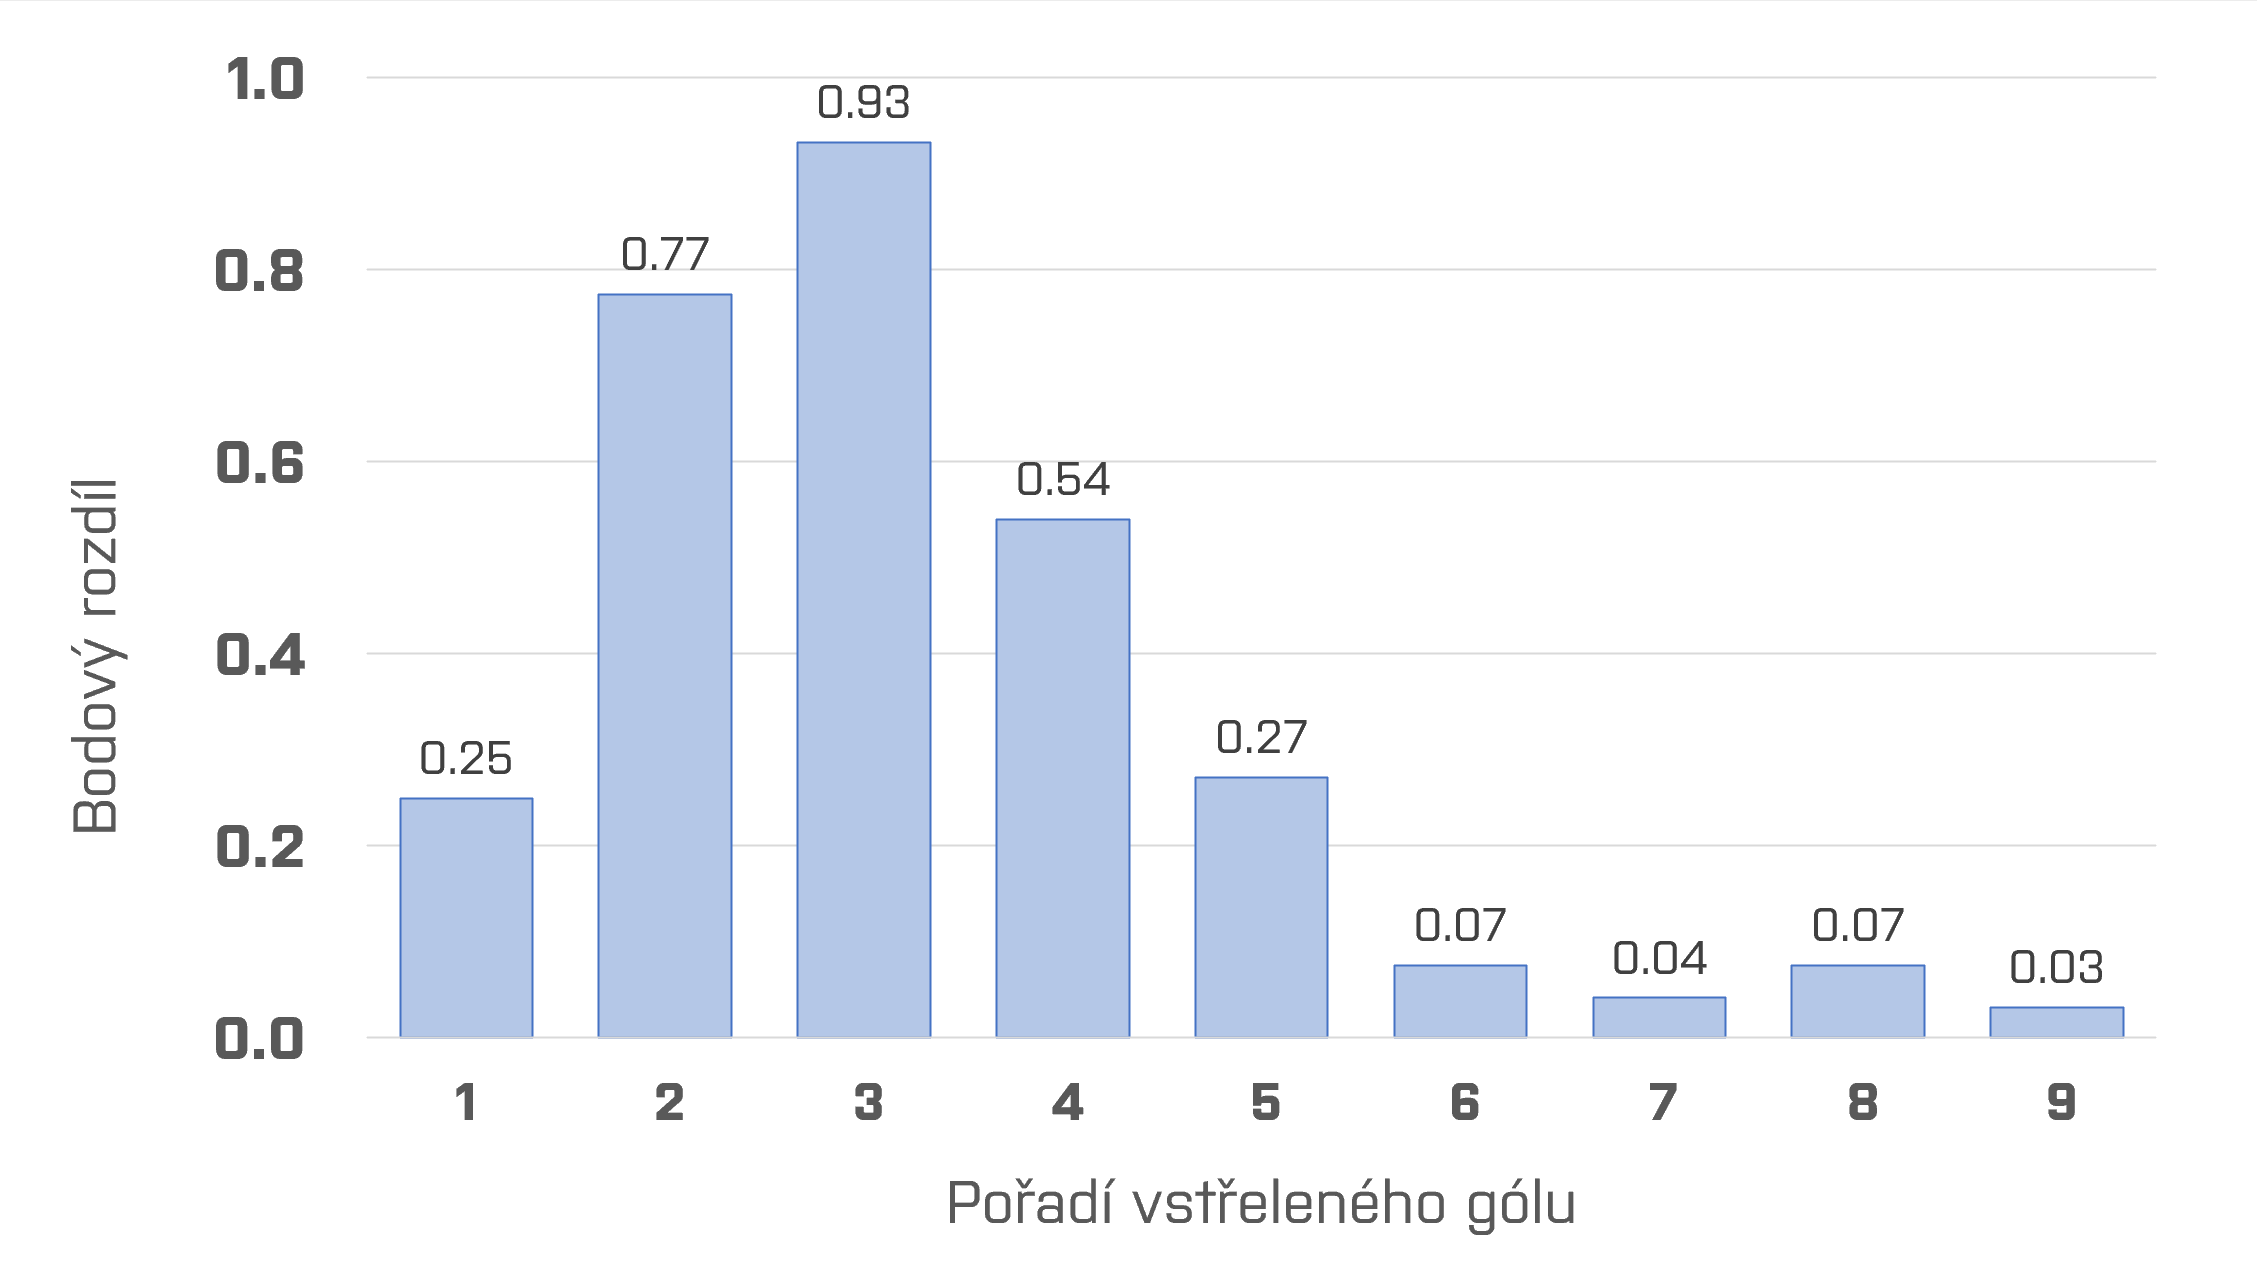 Graf znázorňující rozdíl v průměrném počtu bodů, který tým získá, pokud vstřelí určitý počet gólů, oproti situaci, kdy by vstřelil o gól méně. Graf tedy znázorňuje hodnotu xtého gólu.